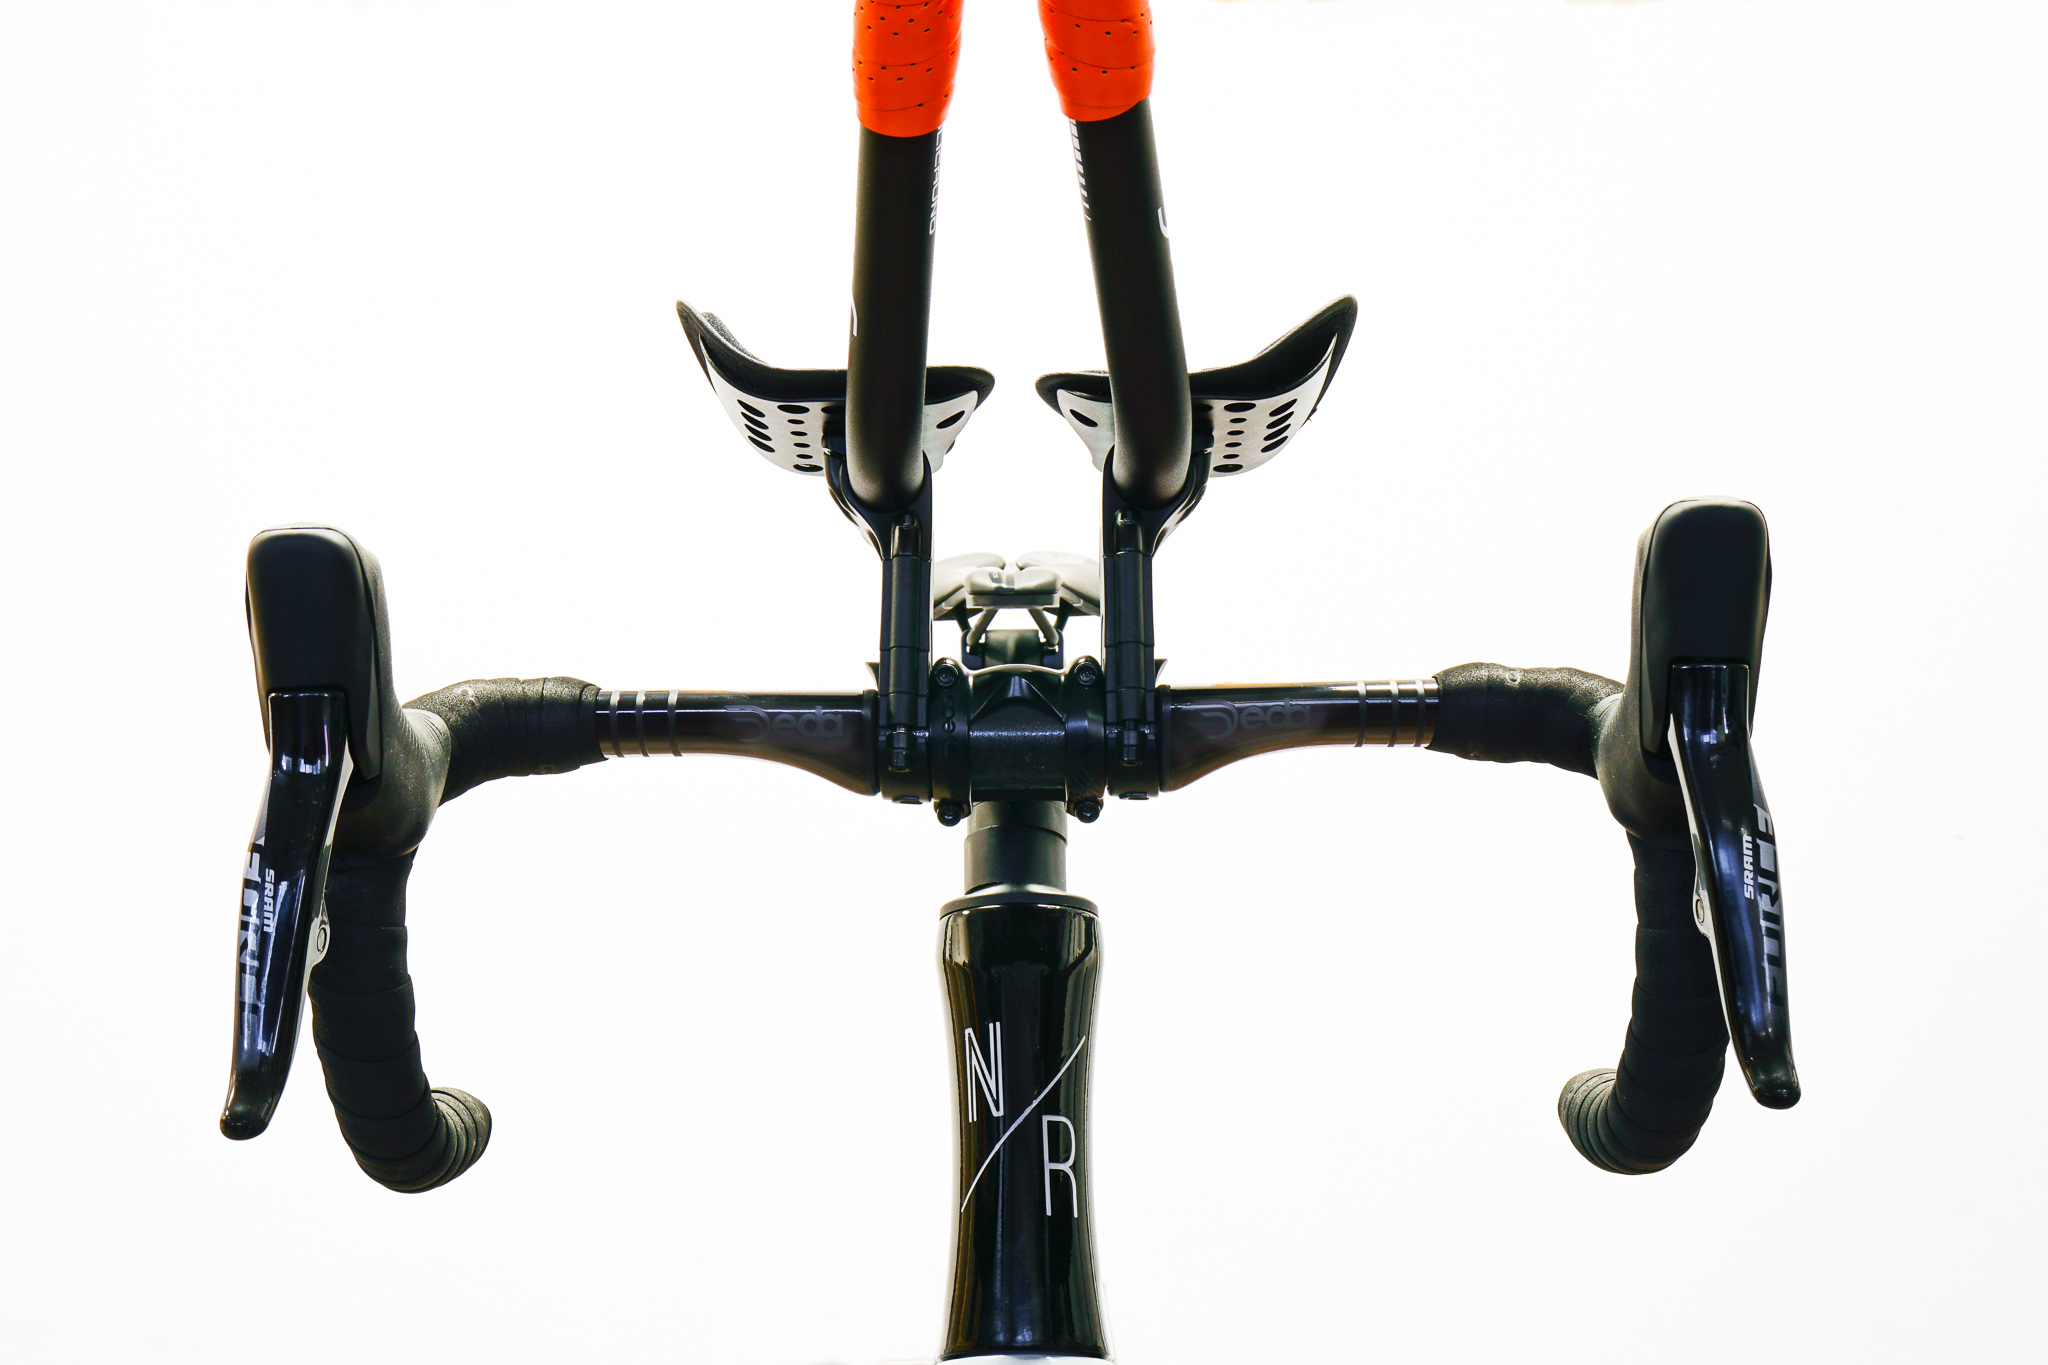 north road cycles - bike frame